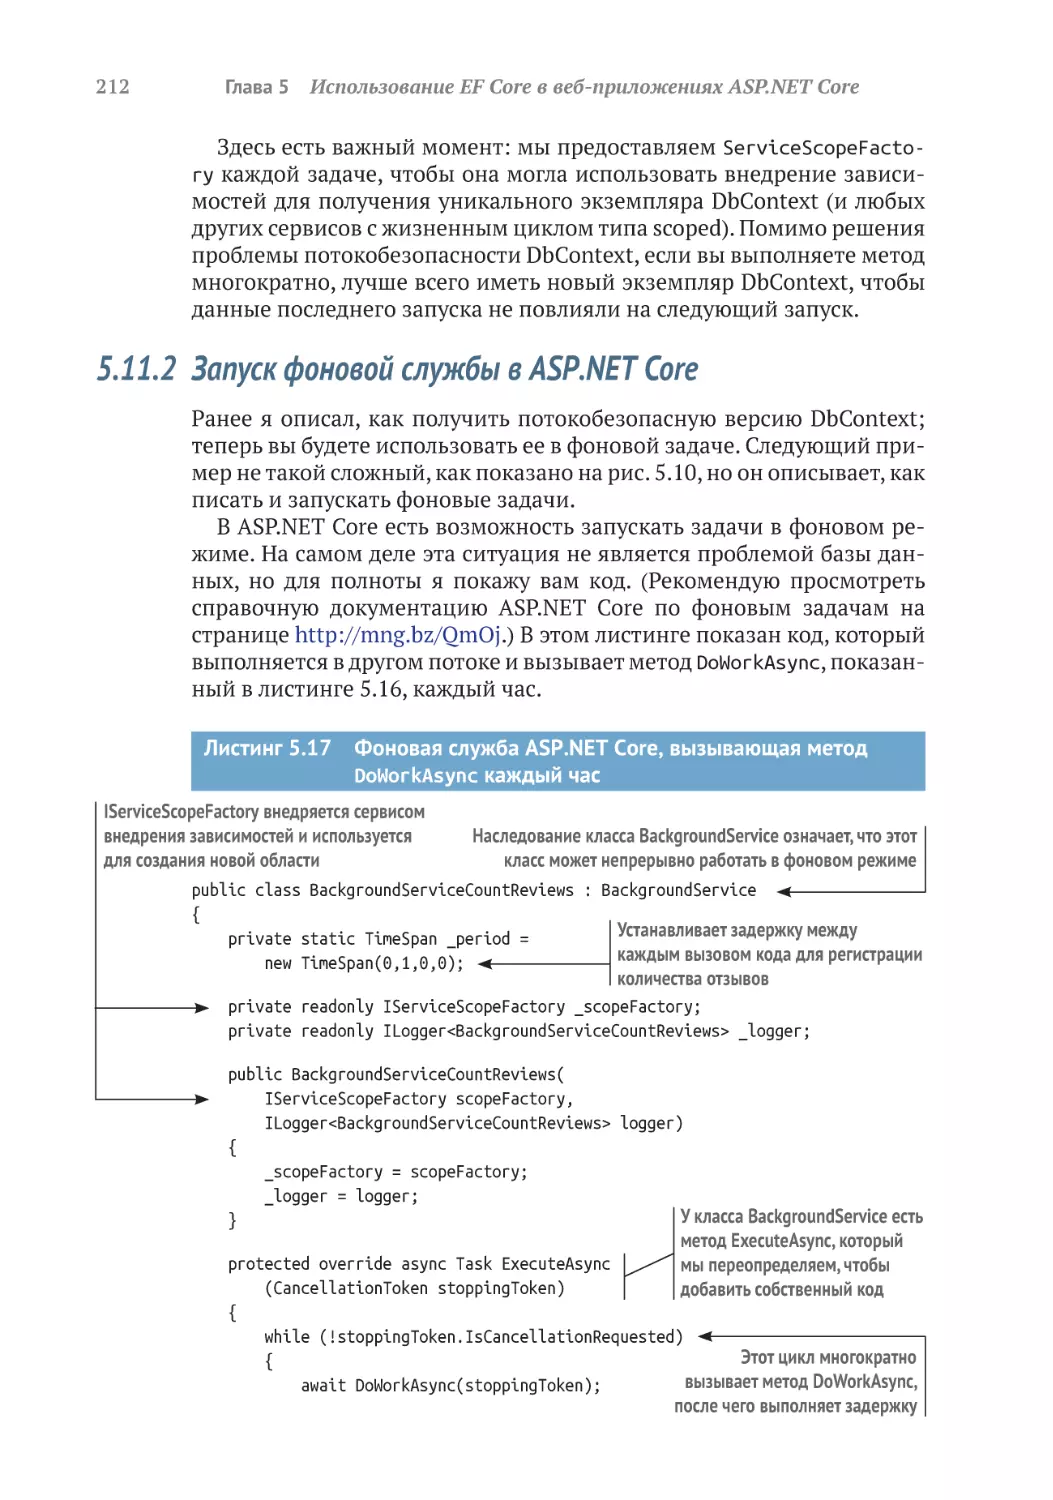 5.11.2	Запуск фоновой службы в ASP.NET Core